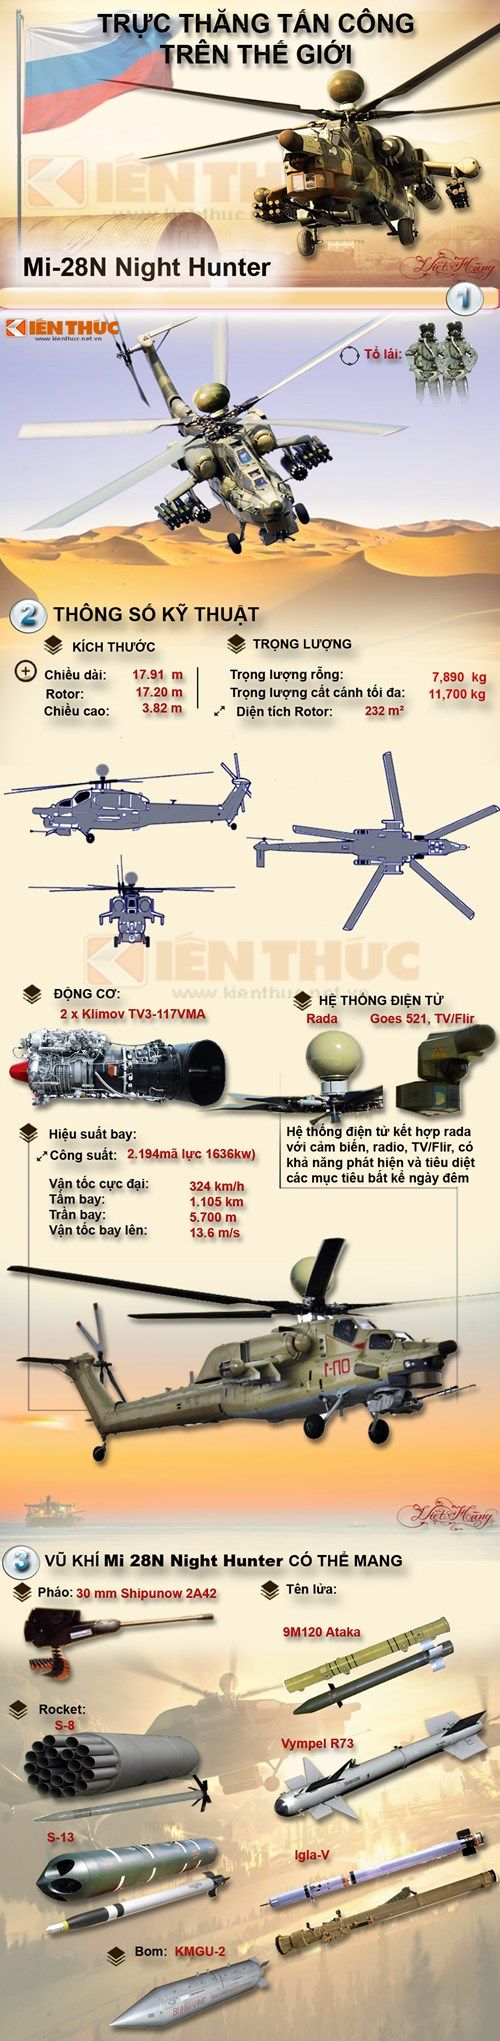 Infographic trực thăng tấn công Mi-28N của Nga